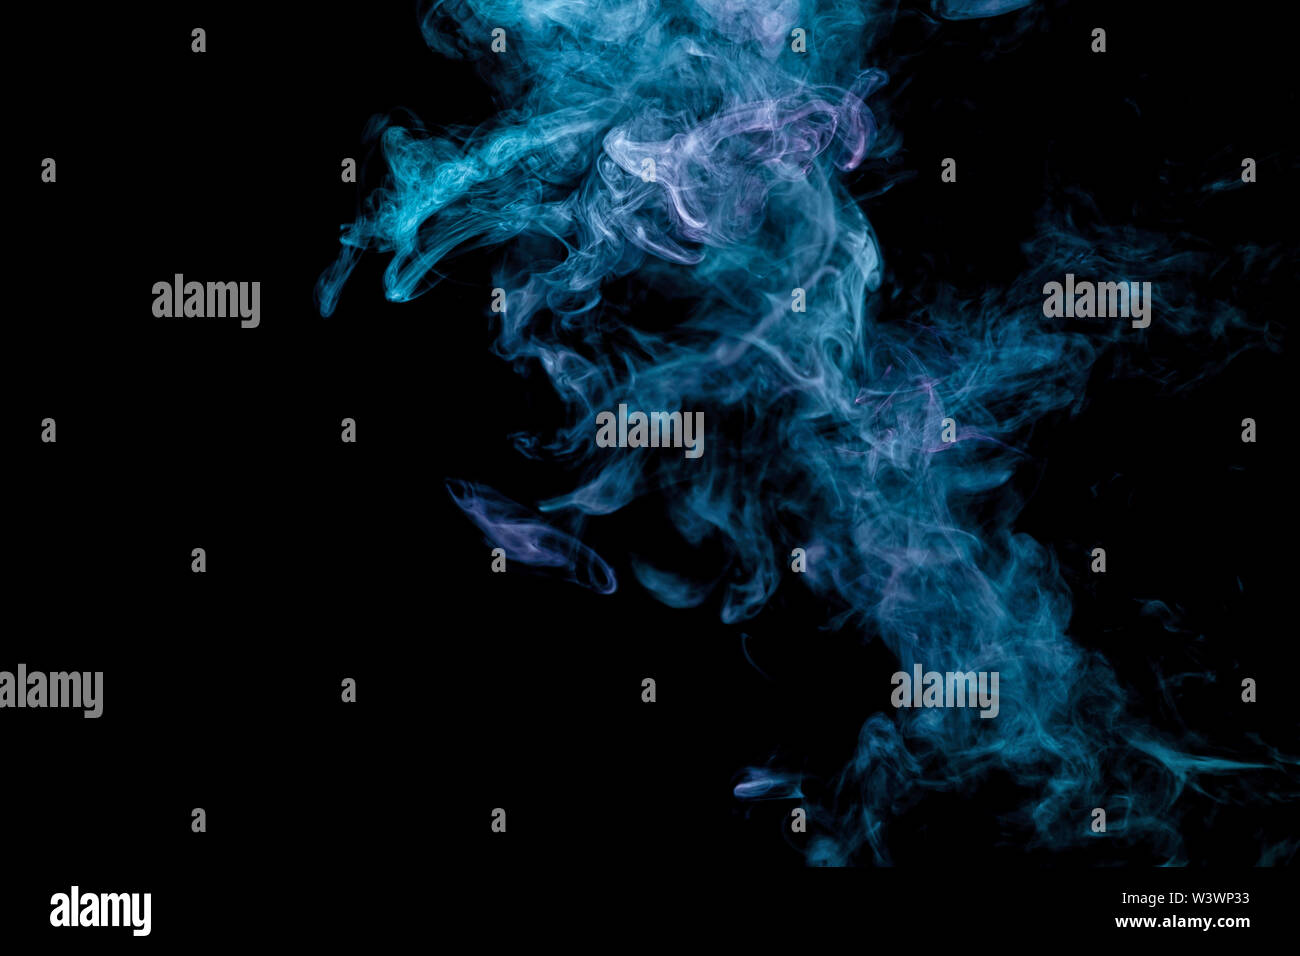 Giftige Bewegung der Farbe Blau und Rosa rauch Abstract auf schwarzem  Hintergrund, Brand Design. Fantasy drucken für Kleidung: T-Shirts,  Sweatshirts Stockfotografie - Alamy